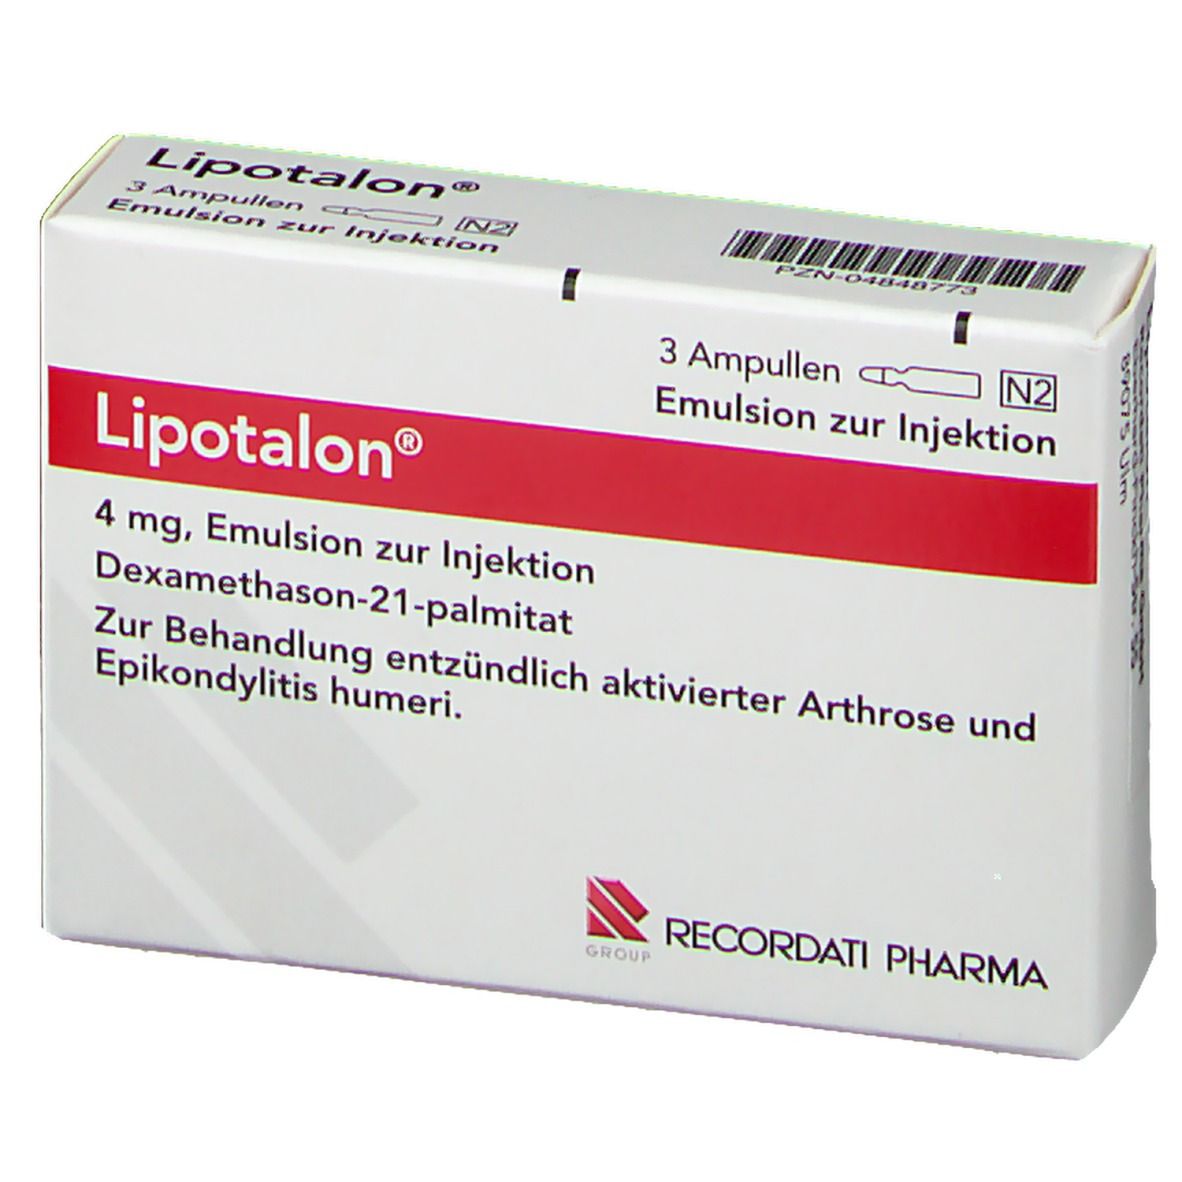 Lipotalon®